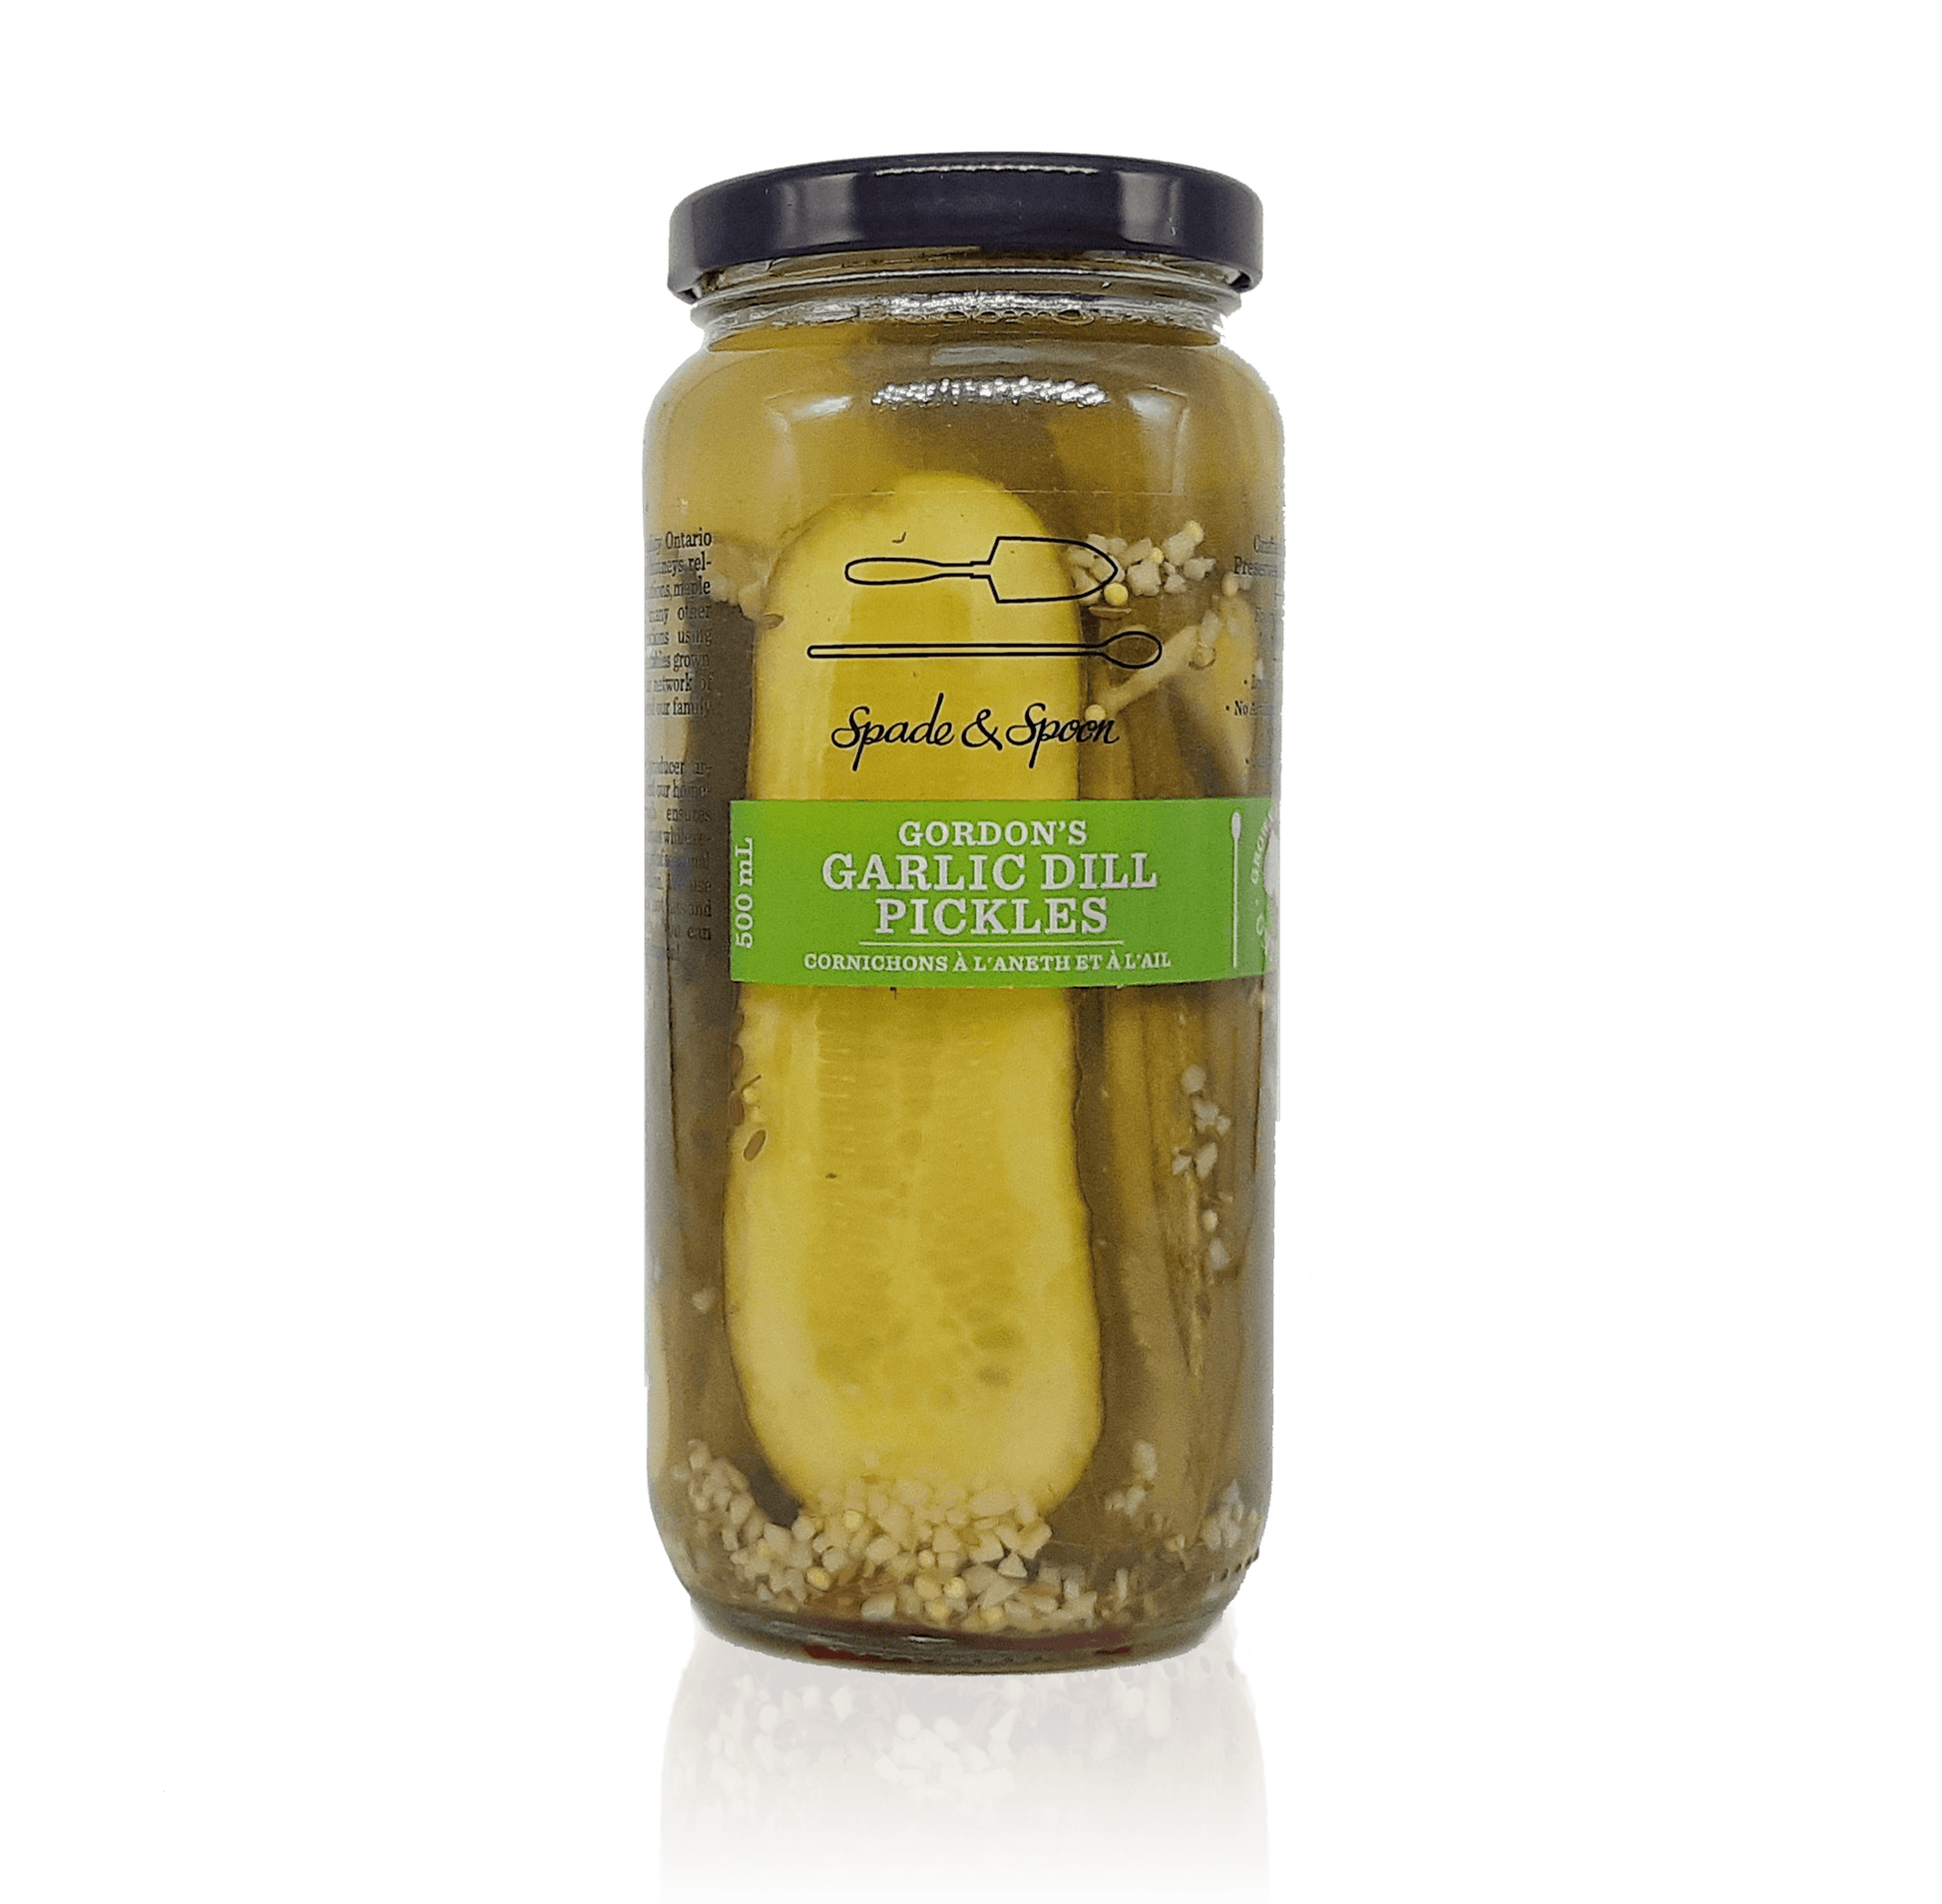 Gordon’s Garlic Dill Pickles - Spade & Spoon - Ontario Farm Goods